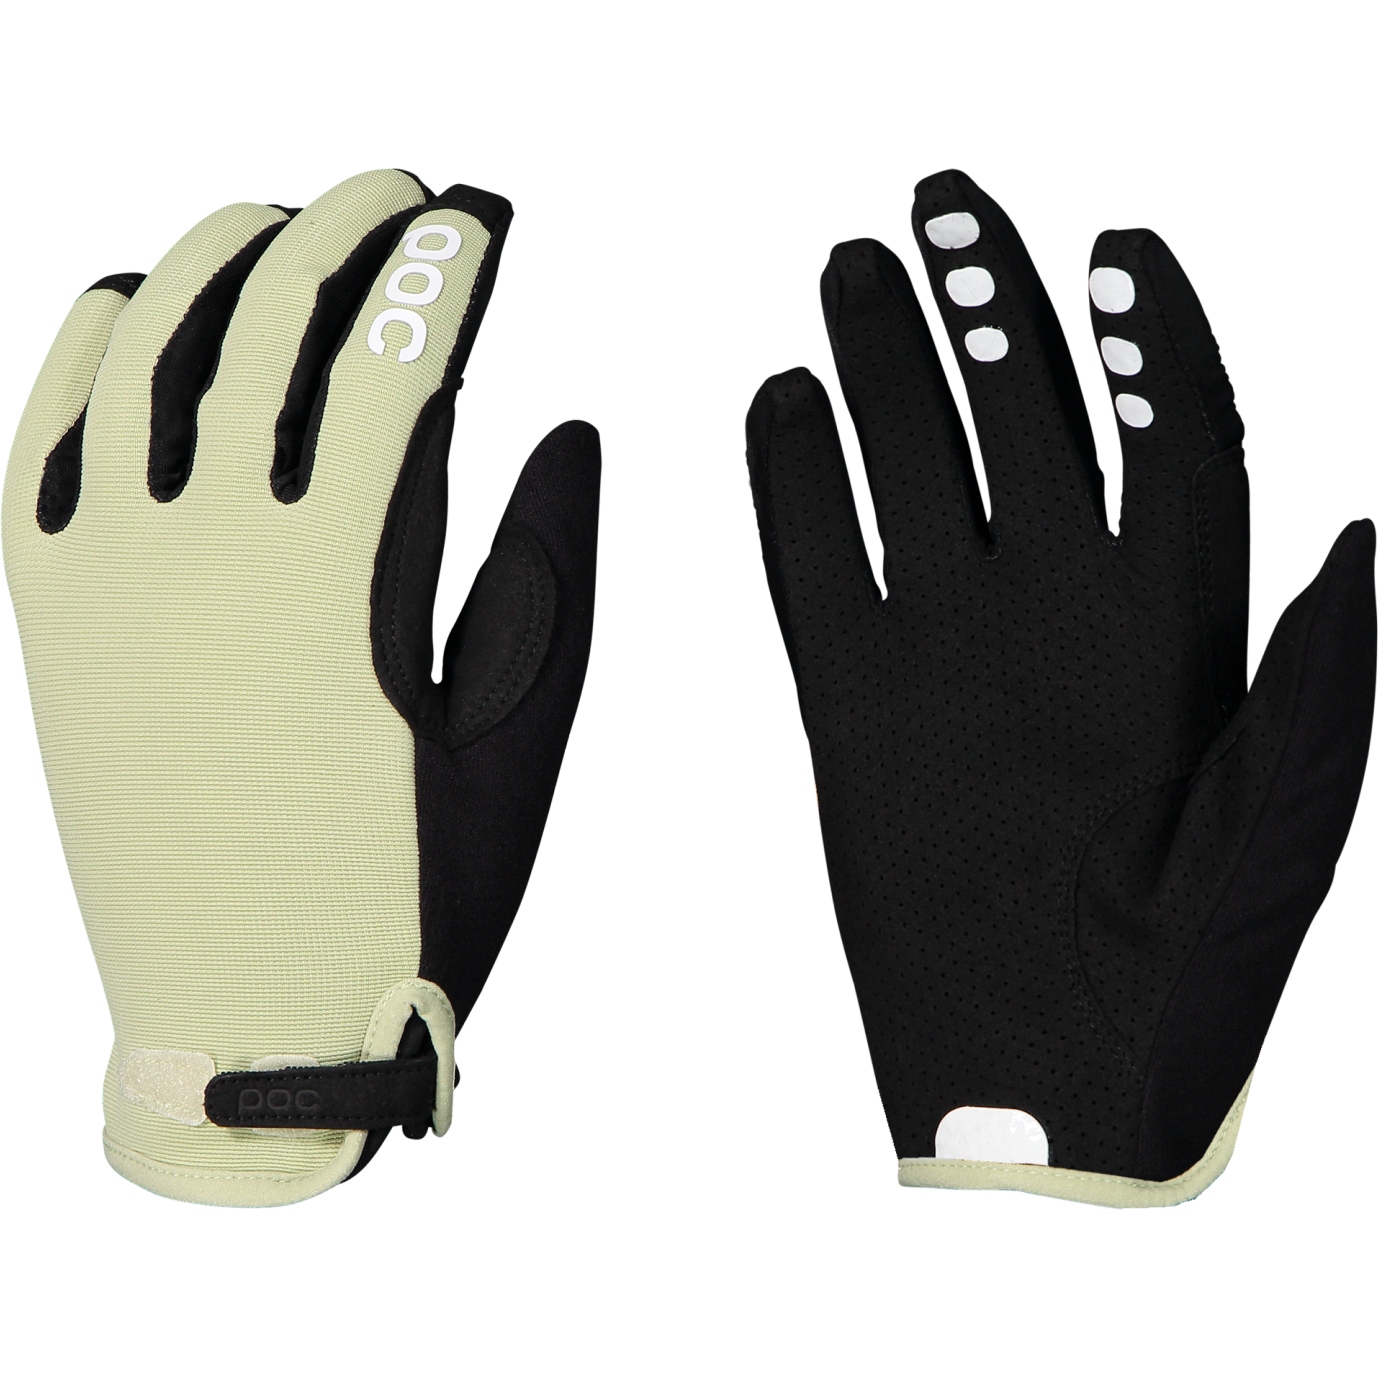 Bild von POC Resistance Enduro Adjustable Handschuhe - 1447 Prehnite Green